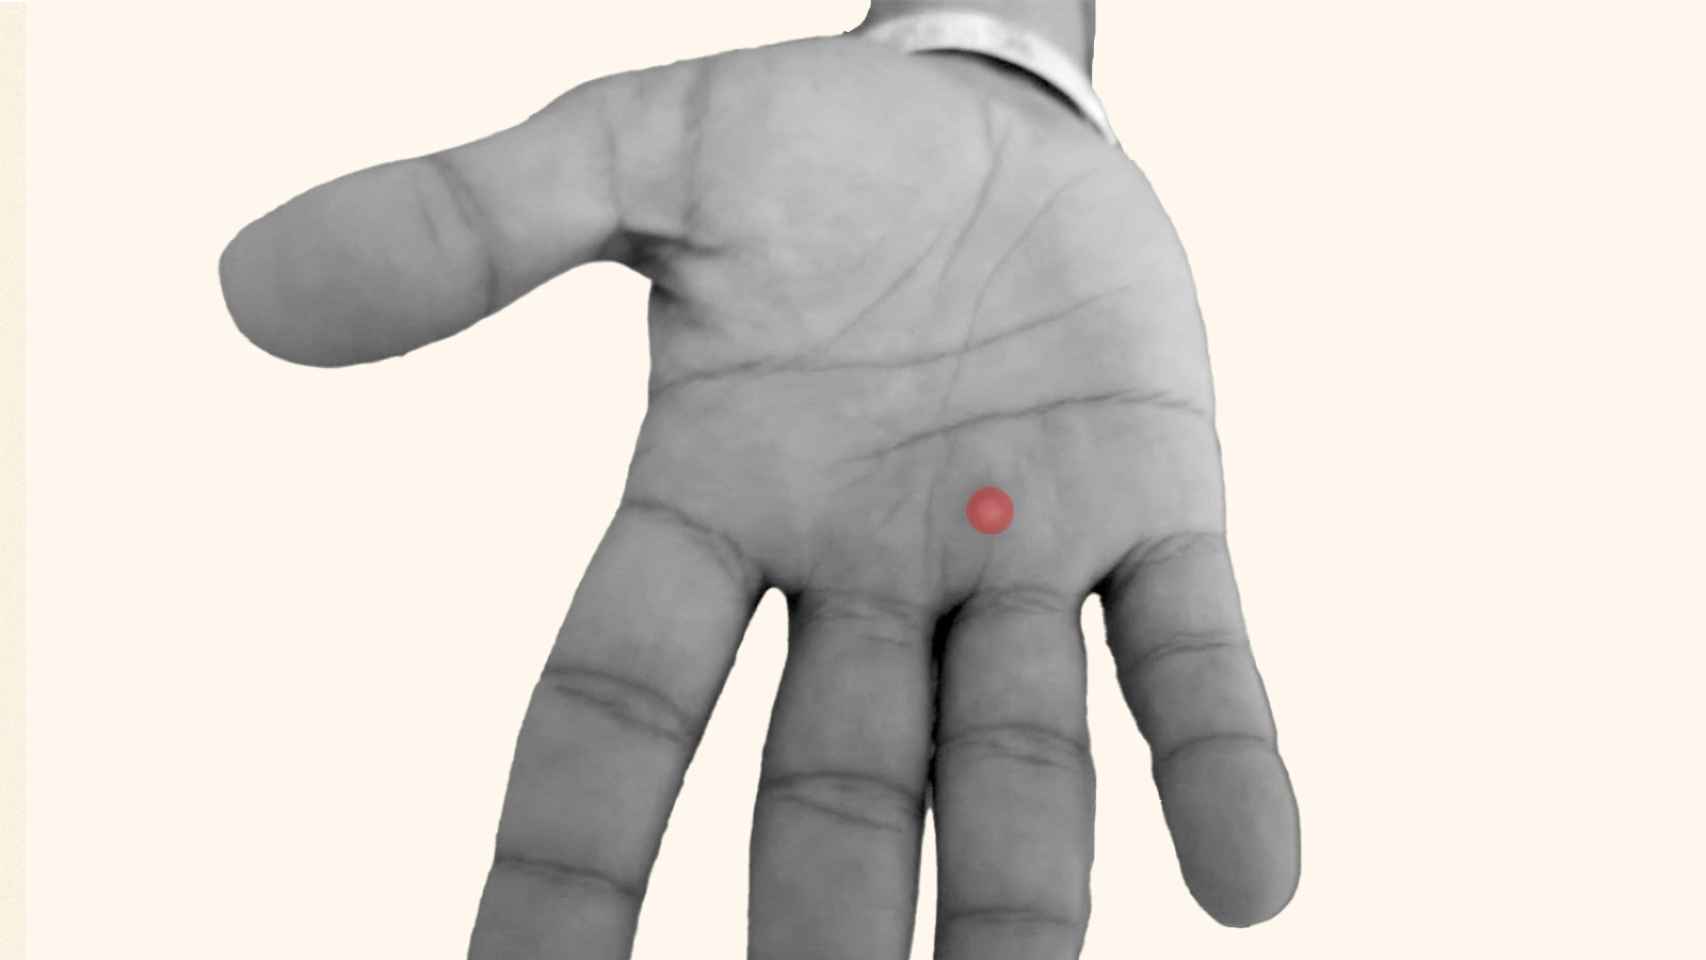 La mano de un paciente con una pústula señalada en rojo.